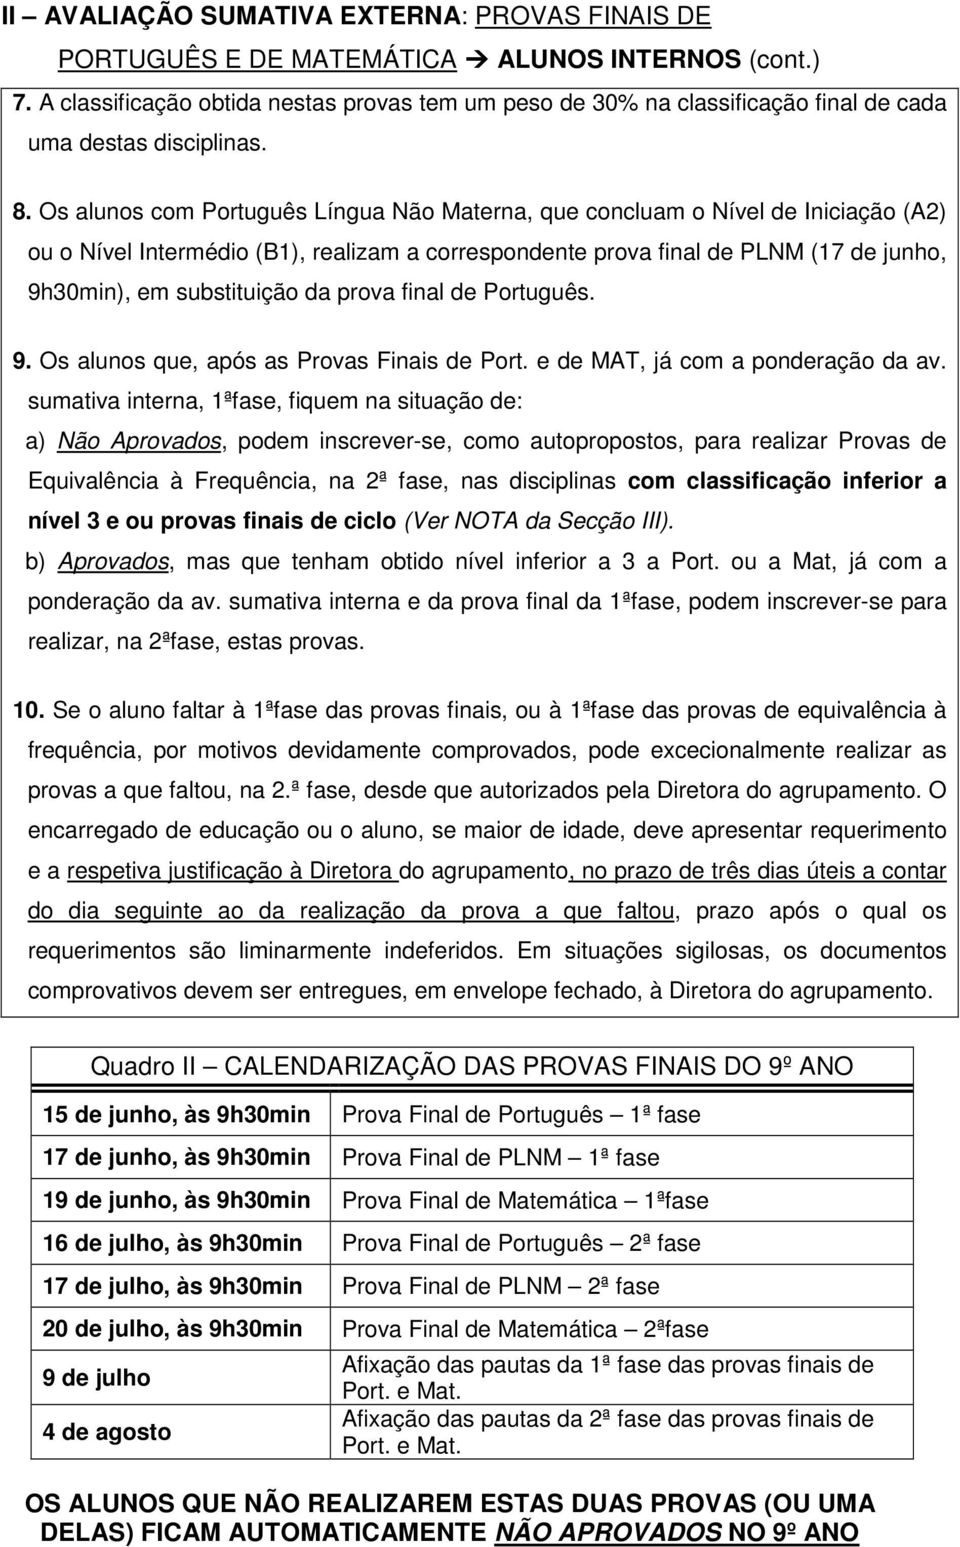 Os alunos com Português Língua Não Materna, que concluam o Nível de Iniciação (A2) ou o Nível Intermédio (B1), realizam a correspondente prova final de PLNM (17 de junho, 9h30min), em substituição da